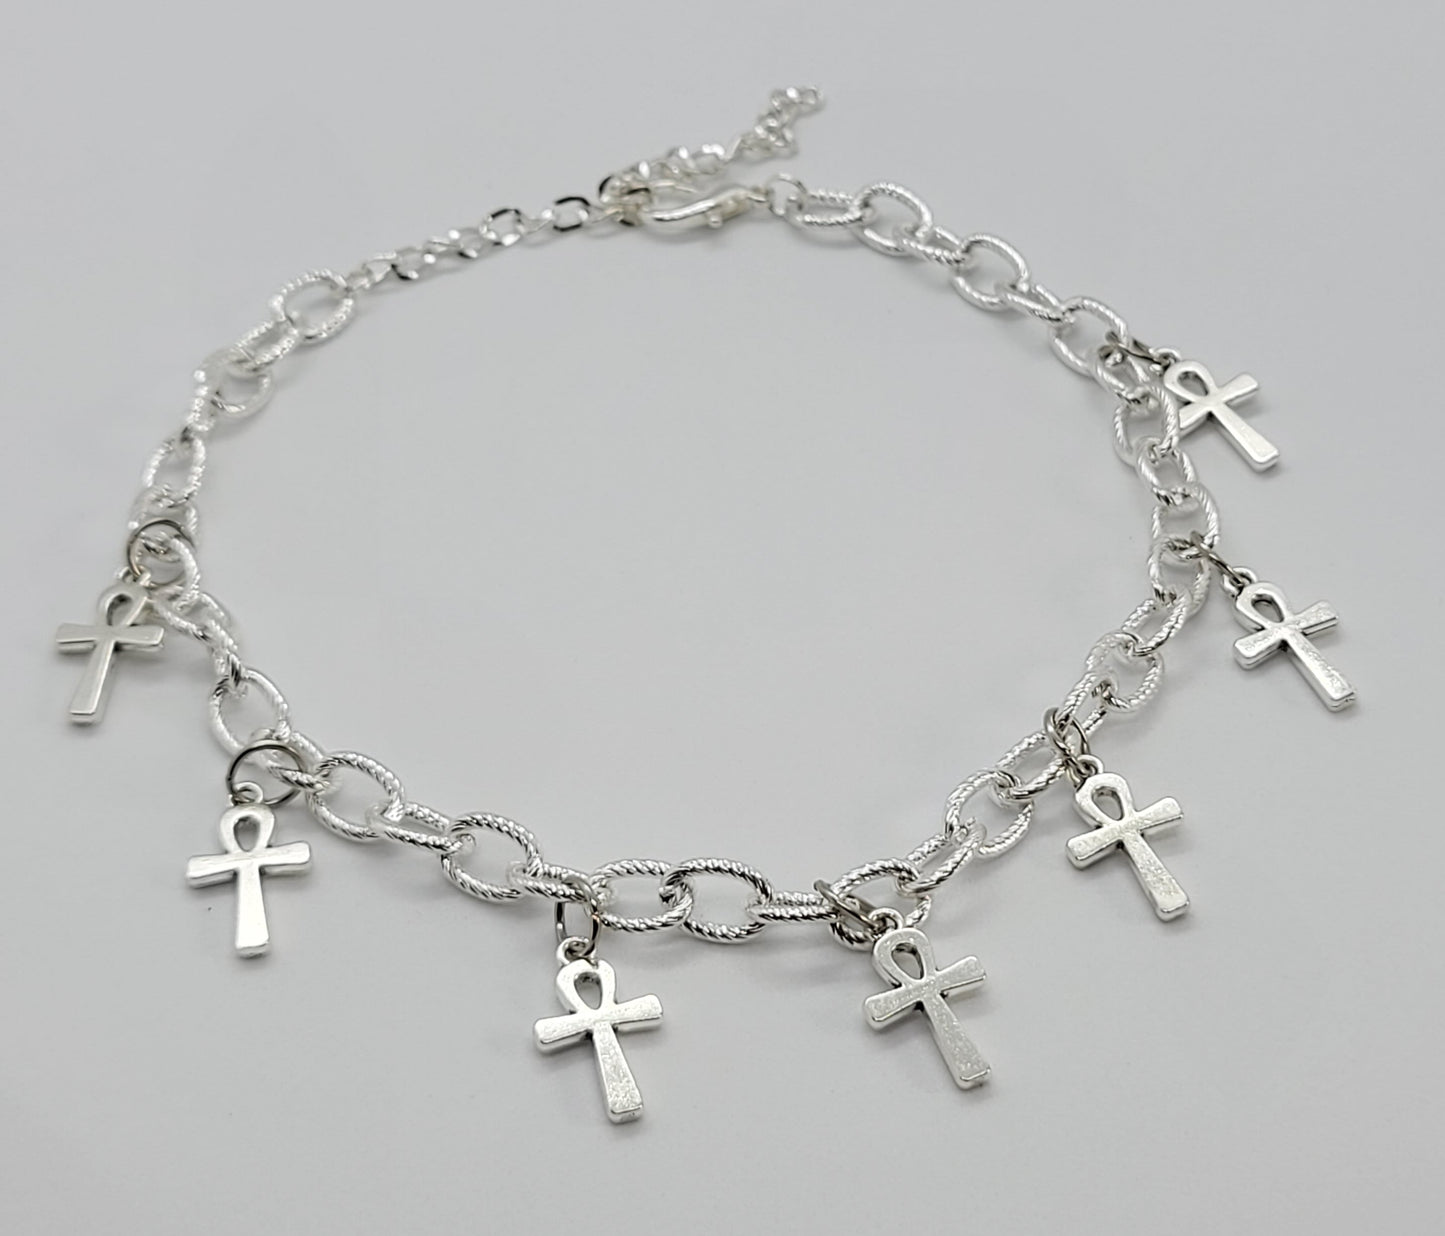 Ankh chain choker necklace